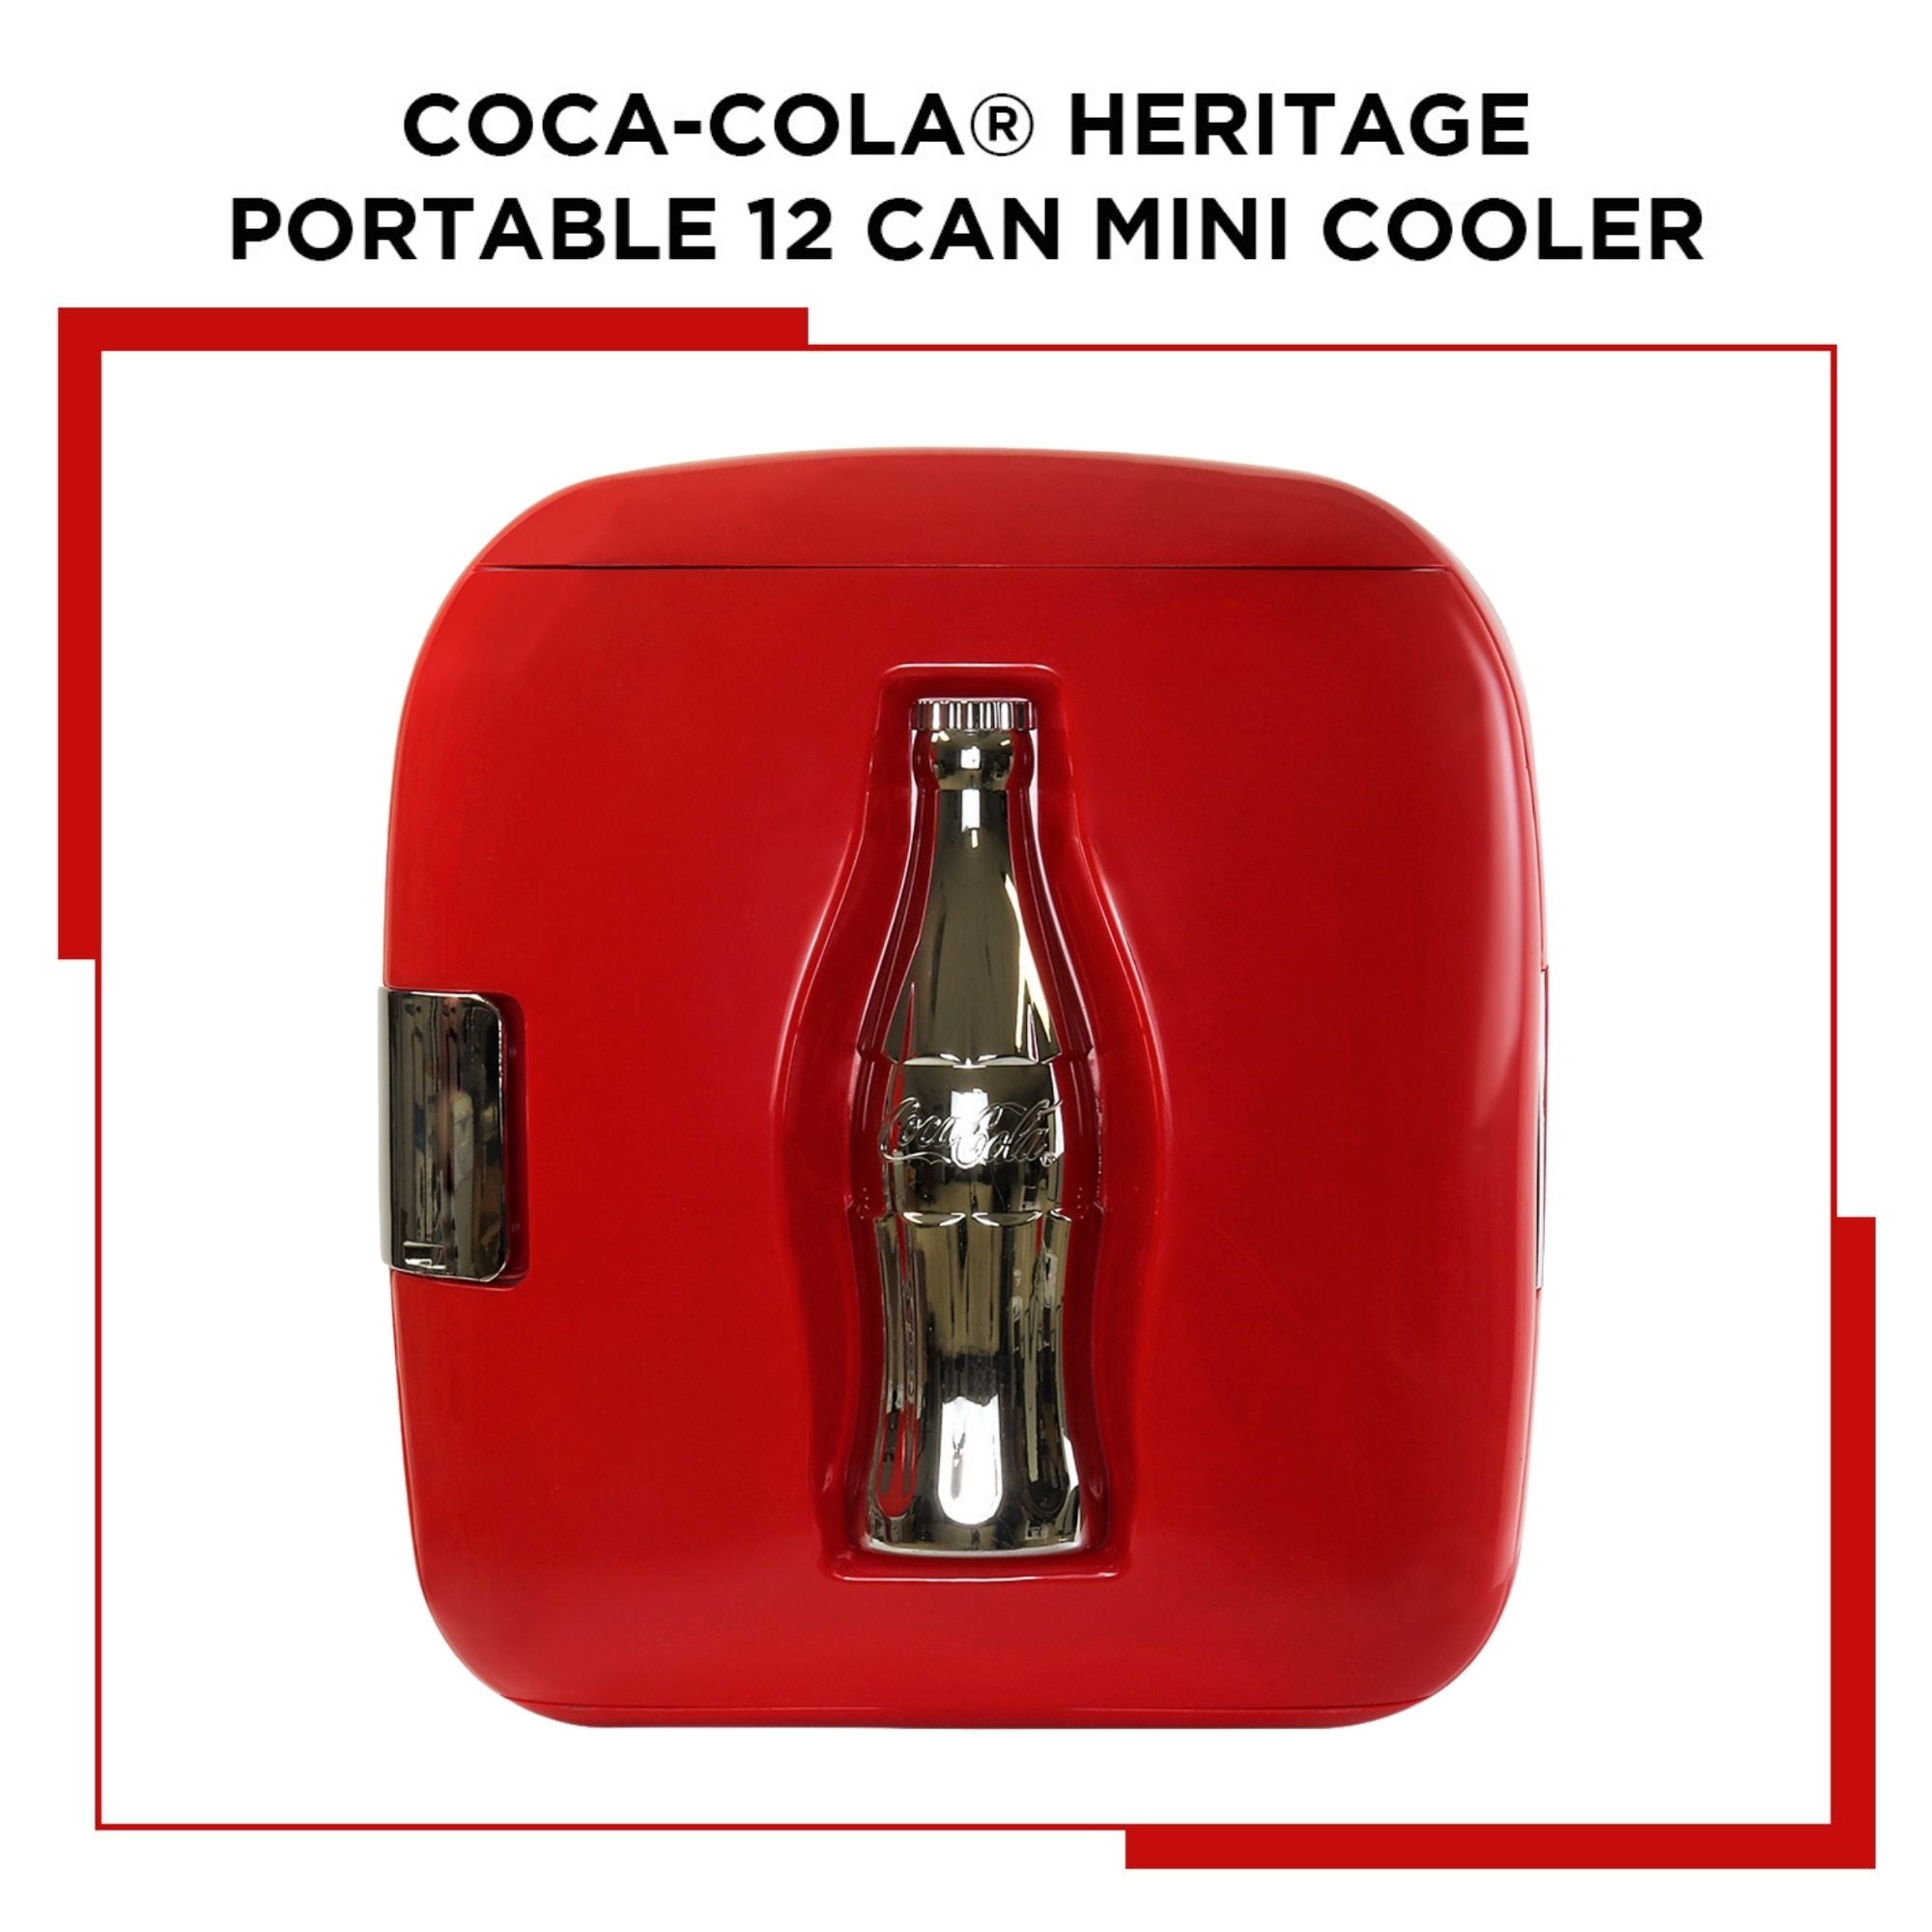 Nevera Coca-Cola Koolatron CC12 con capacidad para 12 latas, color rojo